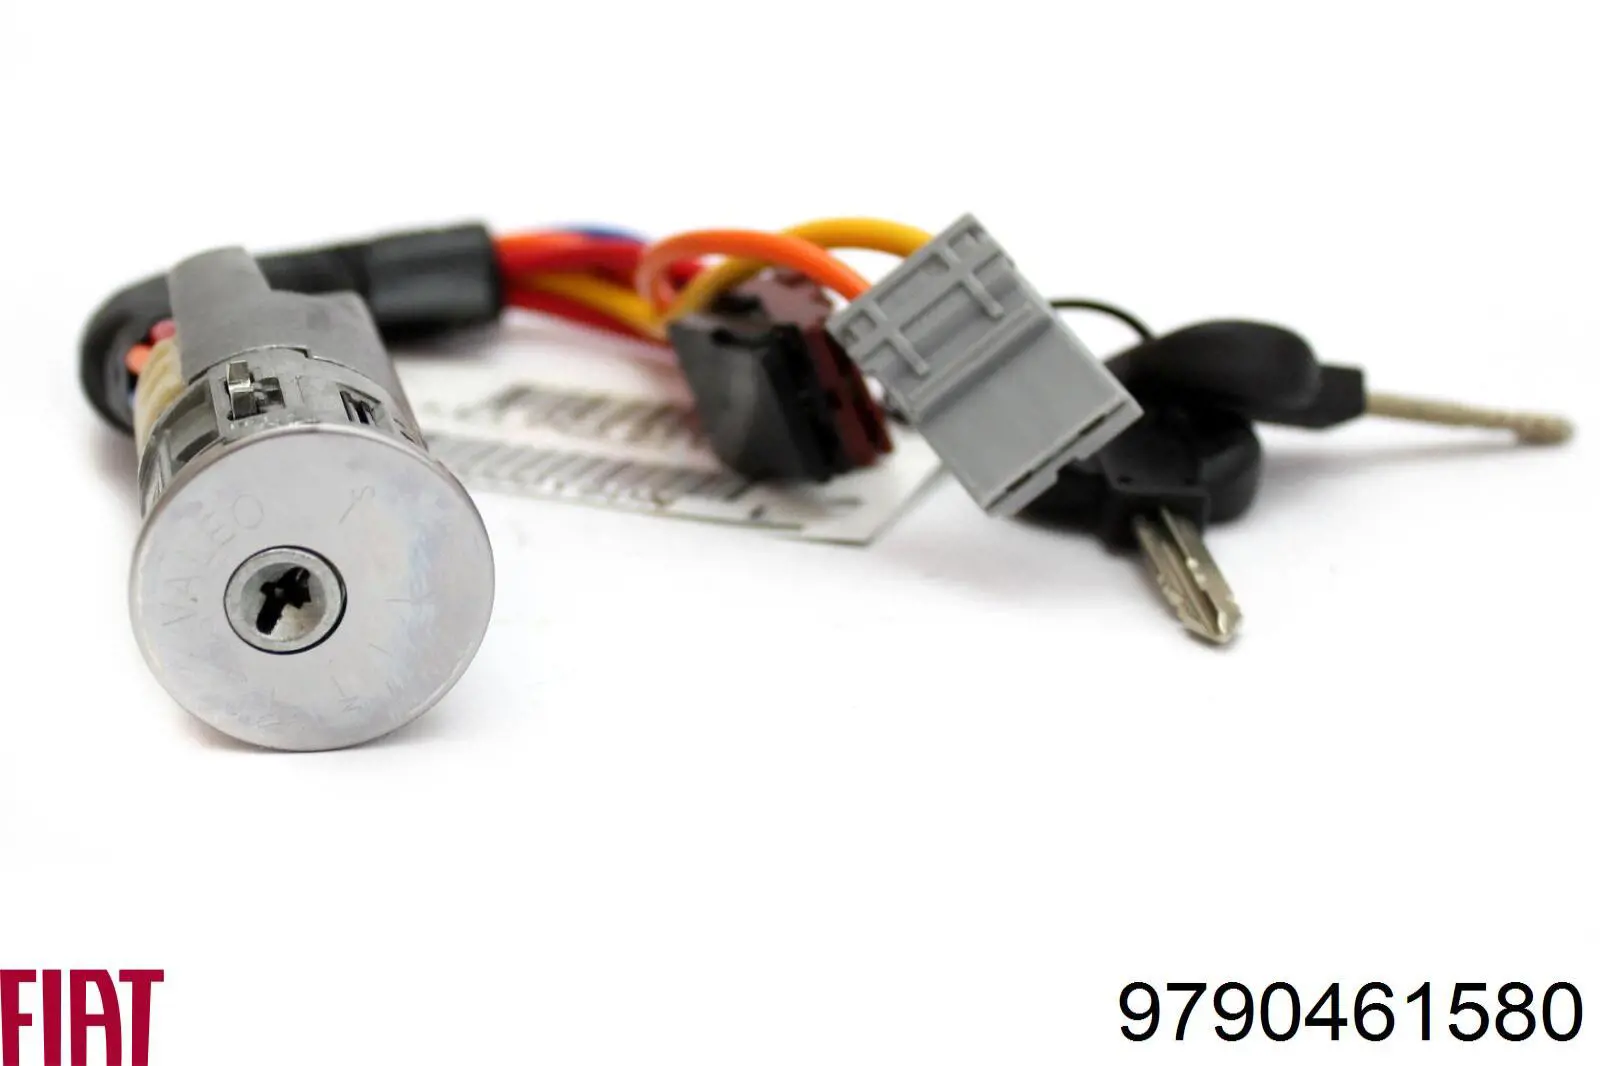 9790461580 Peugeot/Citroen fechadura da porta de encendido com chaves, kit